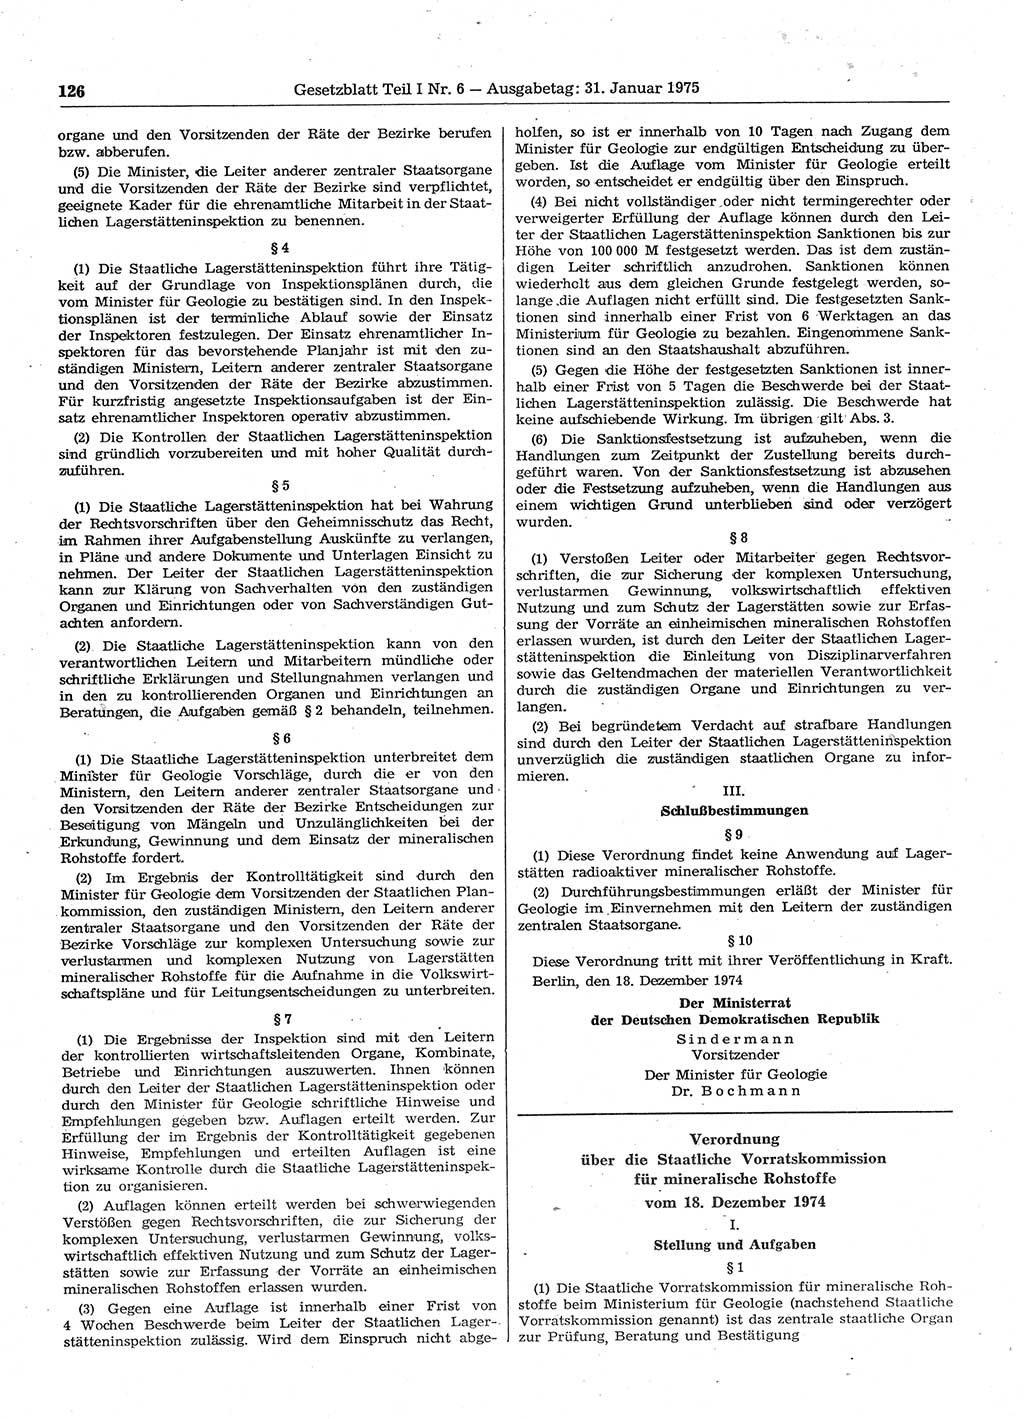 Gesetzblatt (GBl.) der Deutschen Demokratischen Republik (DDR) Teil Ⅰ 1975, Seite 126 (GBl. DDR Ⅰ 1975, S. 126)